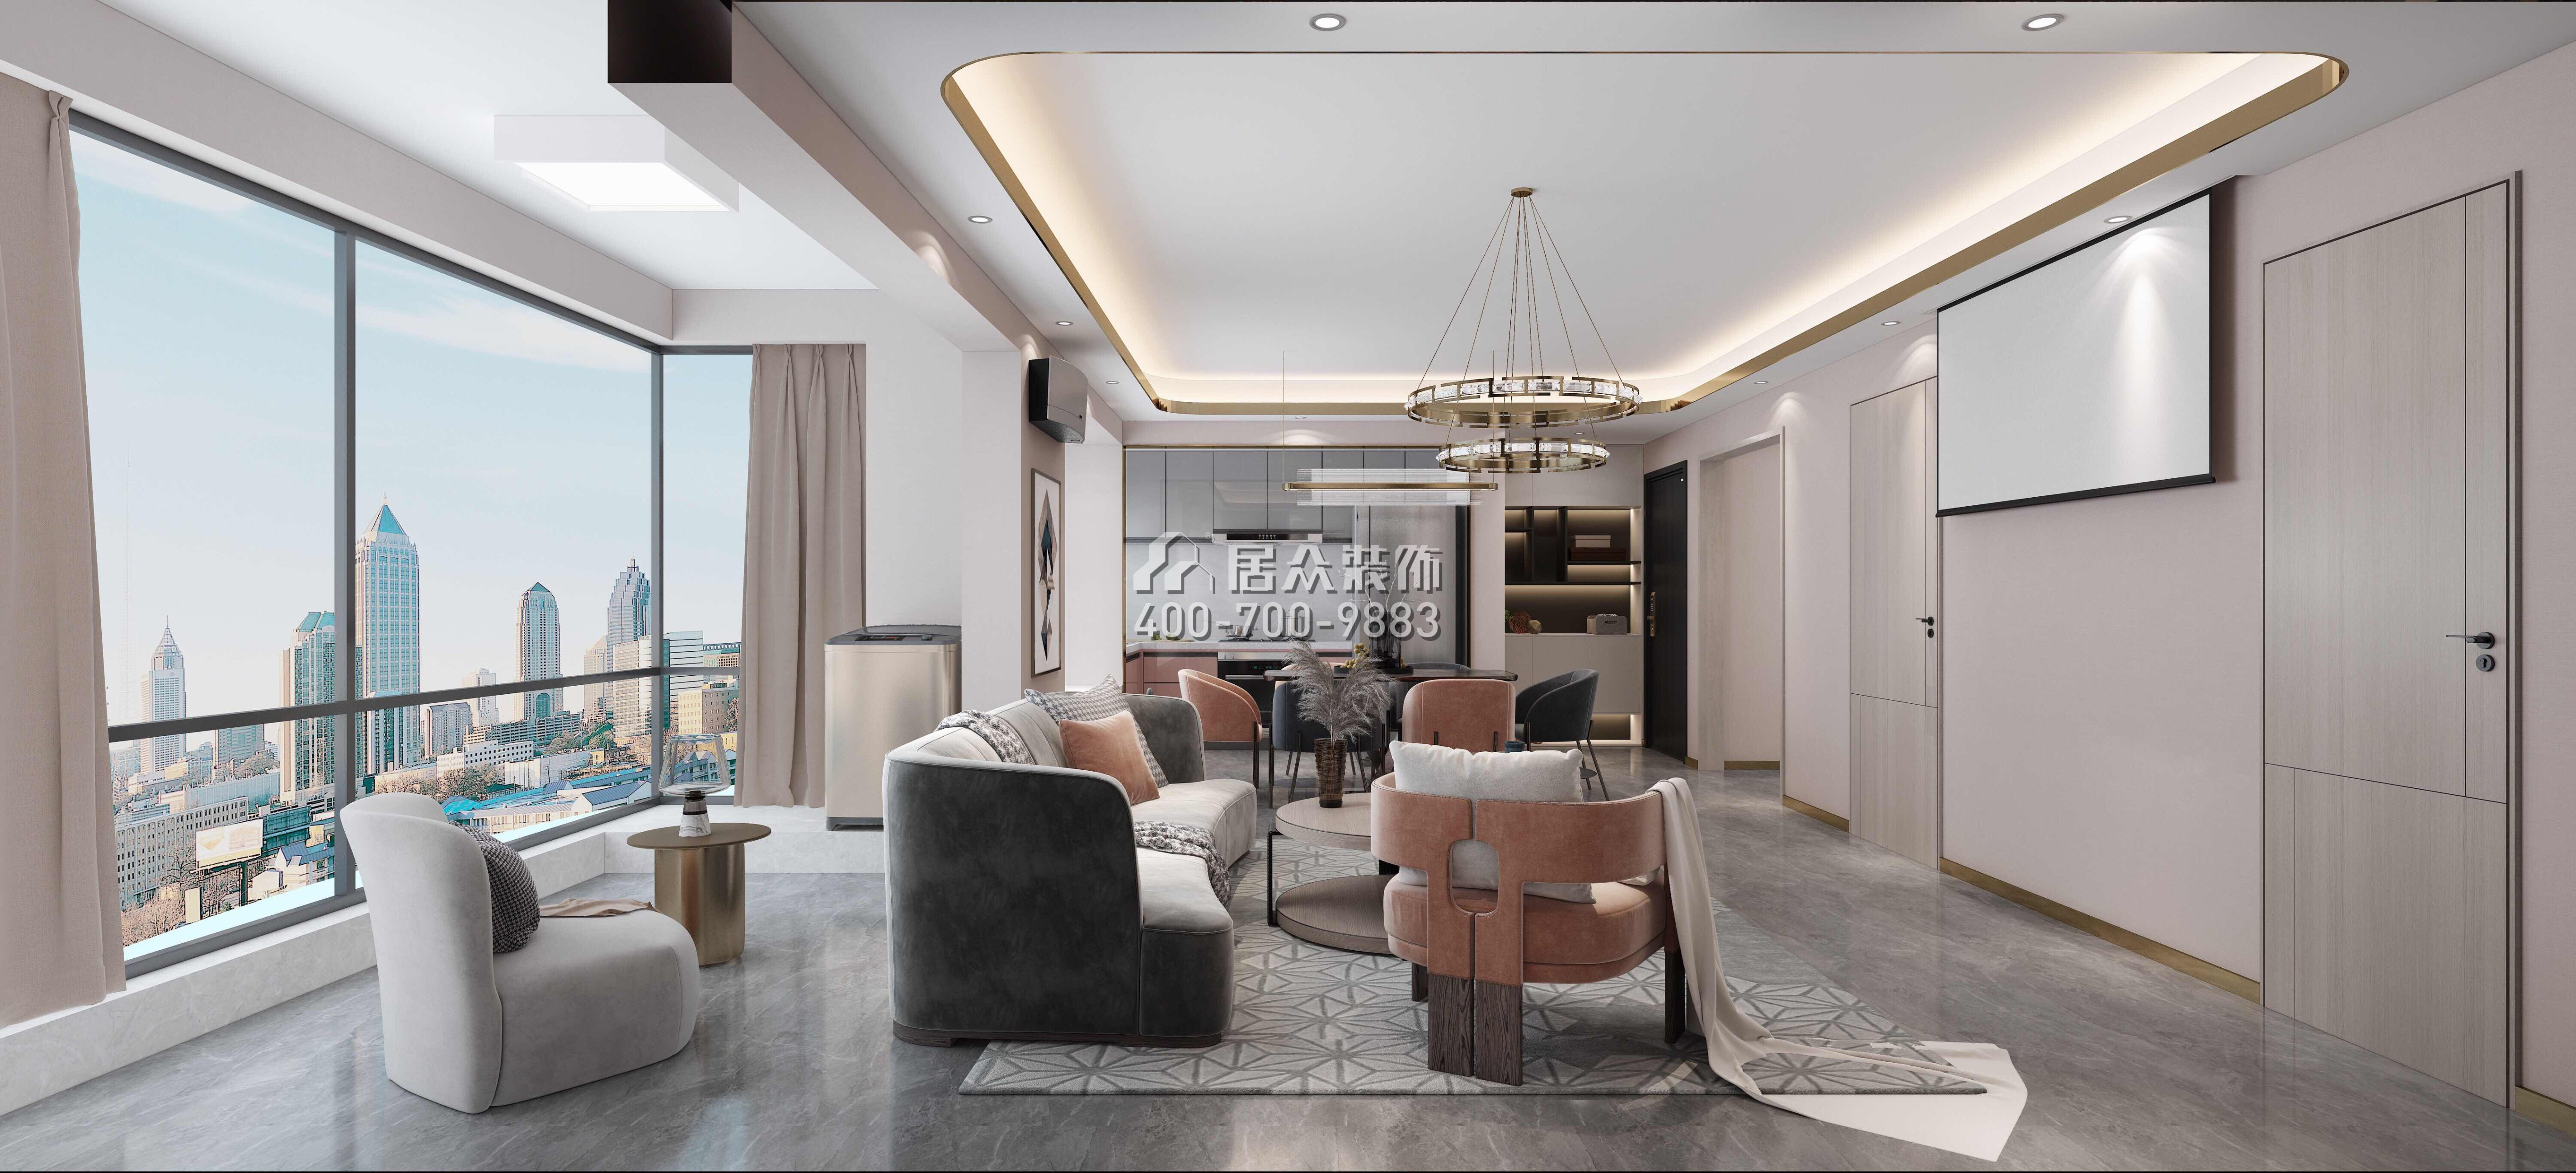 东关乐尚林居110平方米现代简约风格平层户型客厅装修效果图